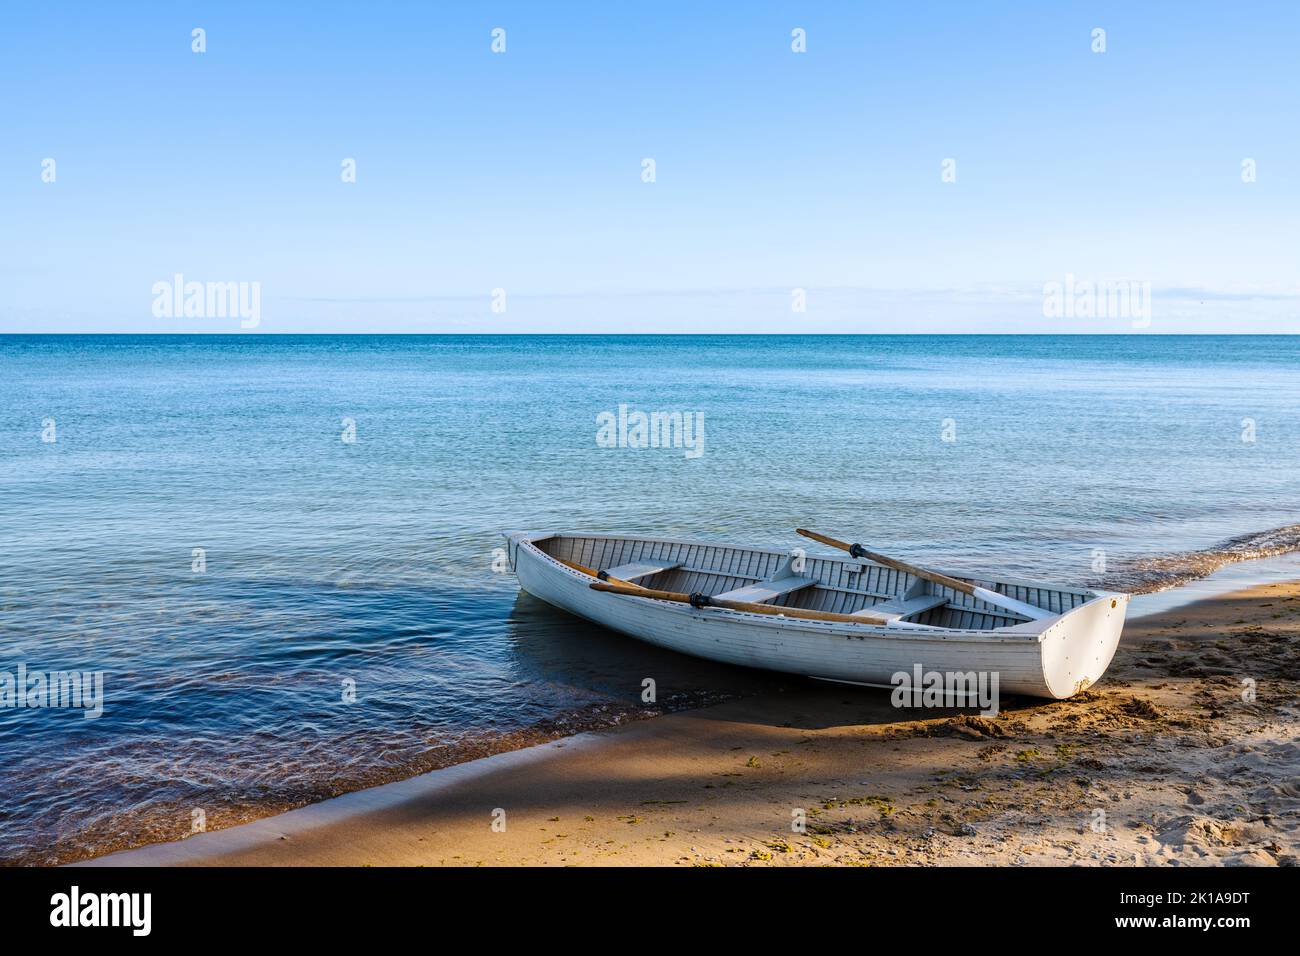 Vecchia fila barca sulla spiaggia con ombra di alberi. Oceano calmo all'orizzonte. Foto Stock